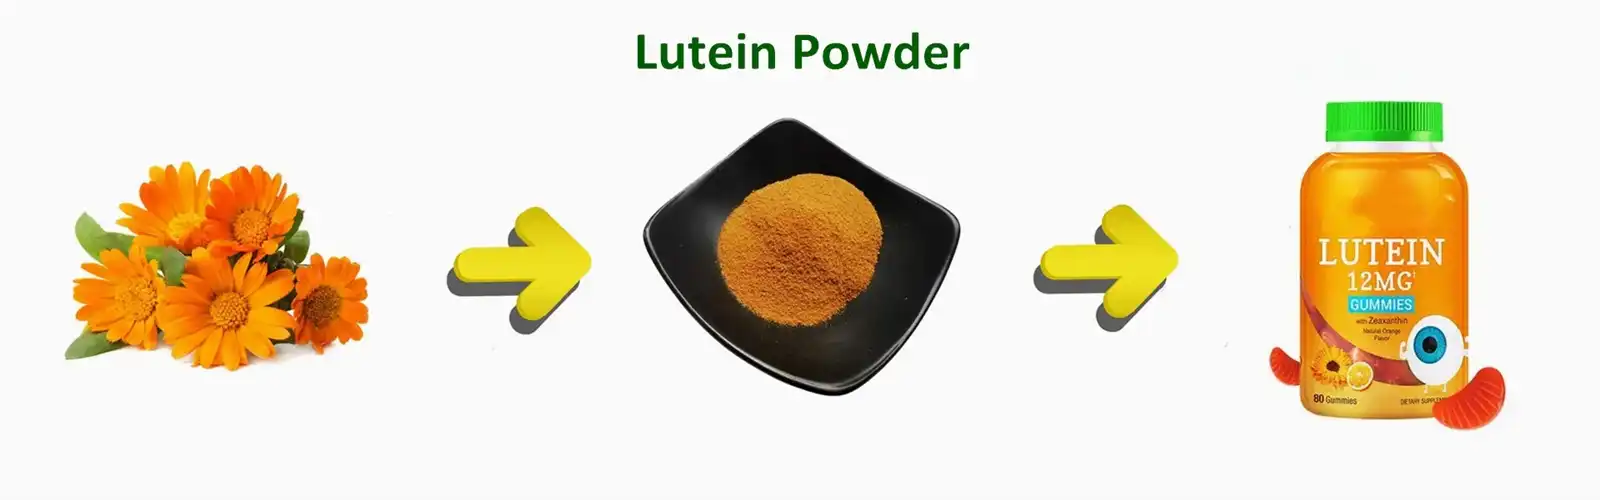 Pure Lutein Powder